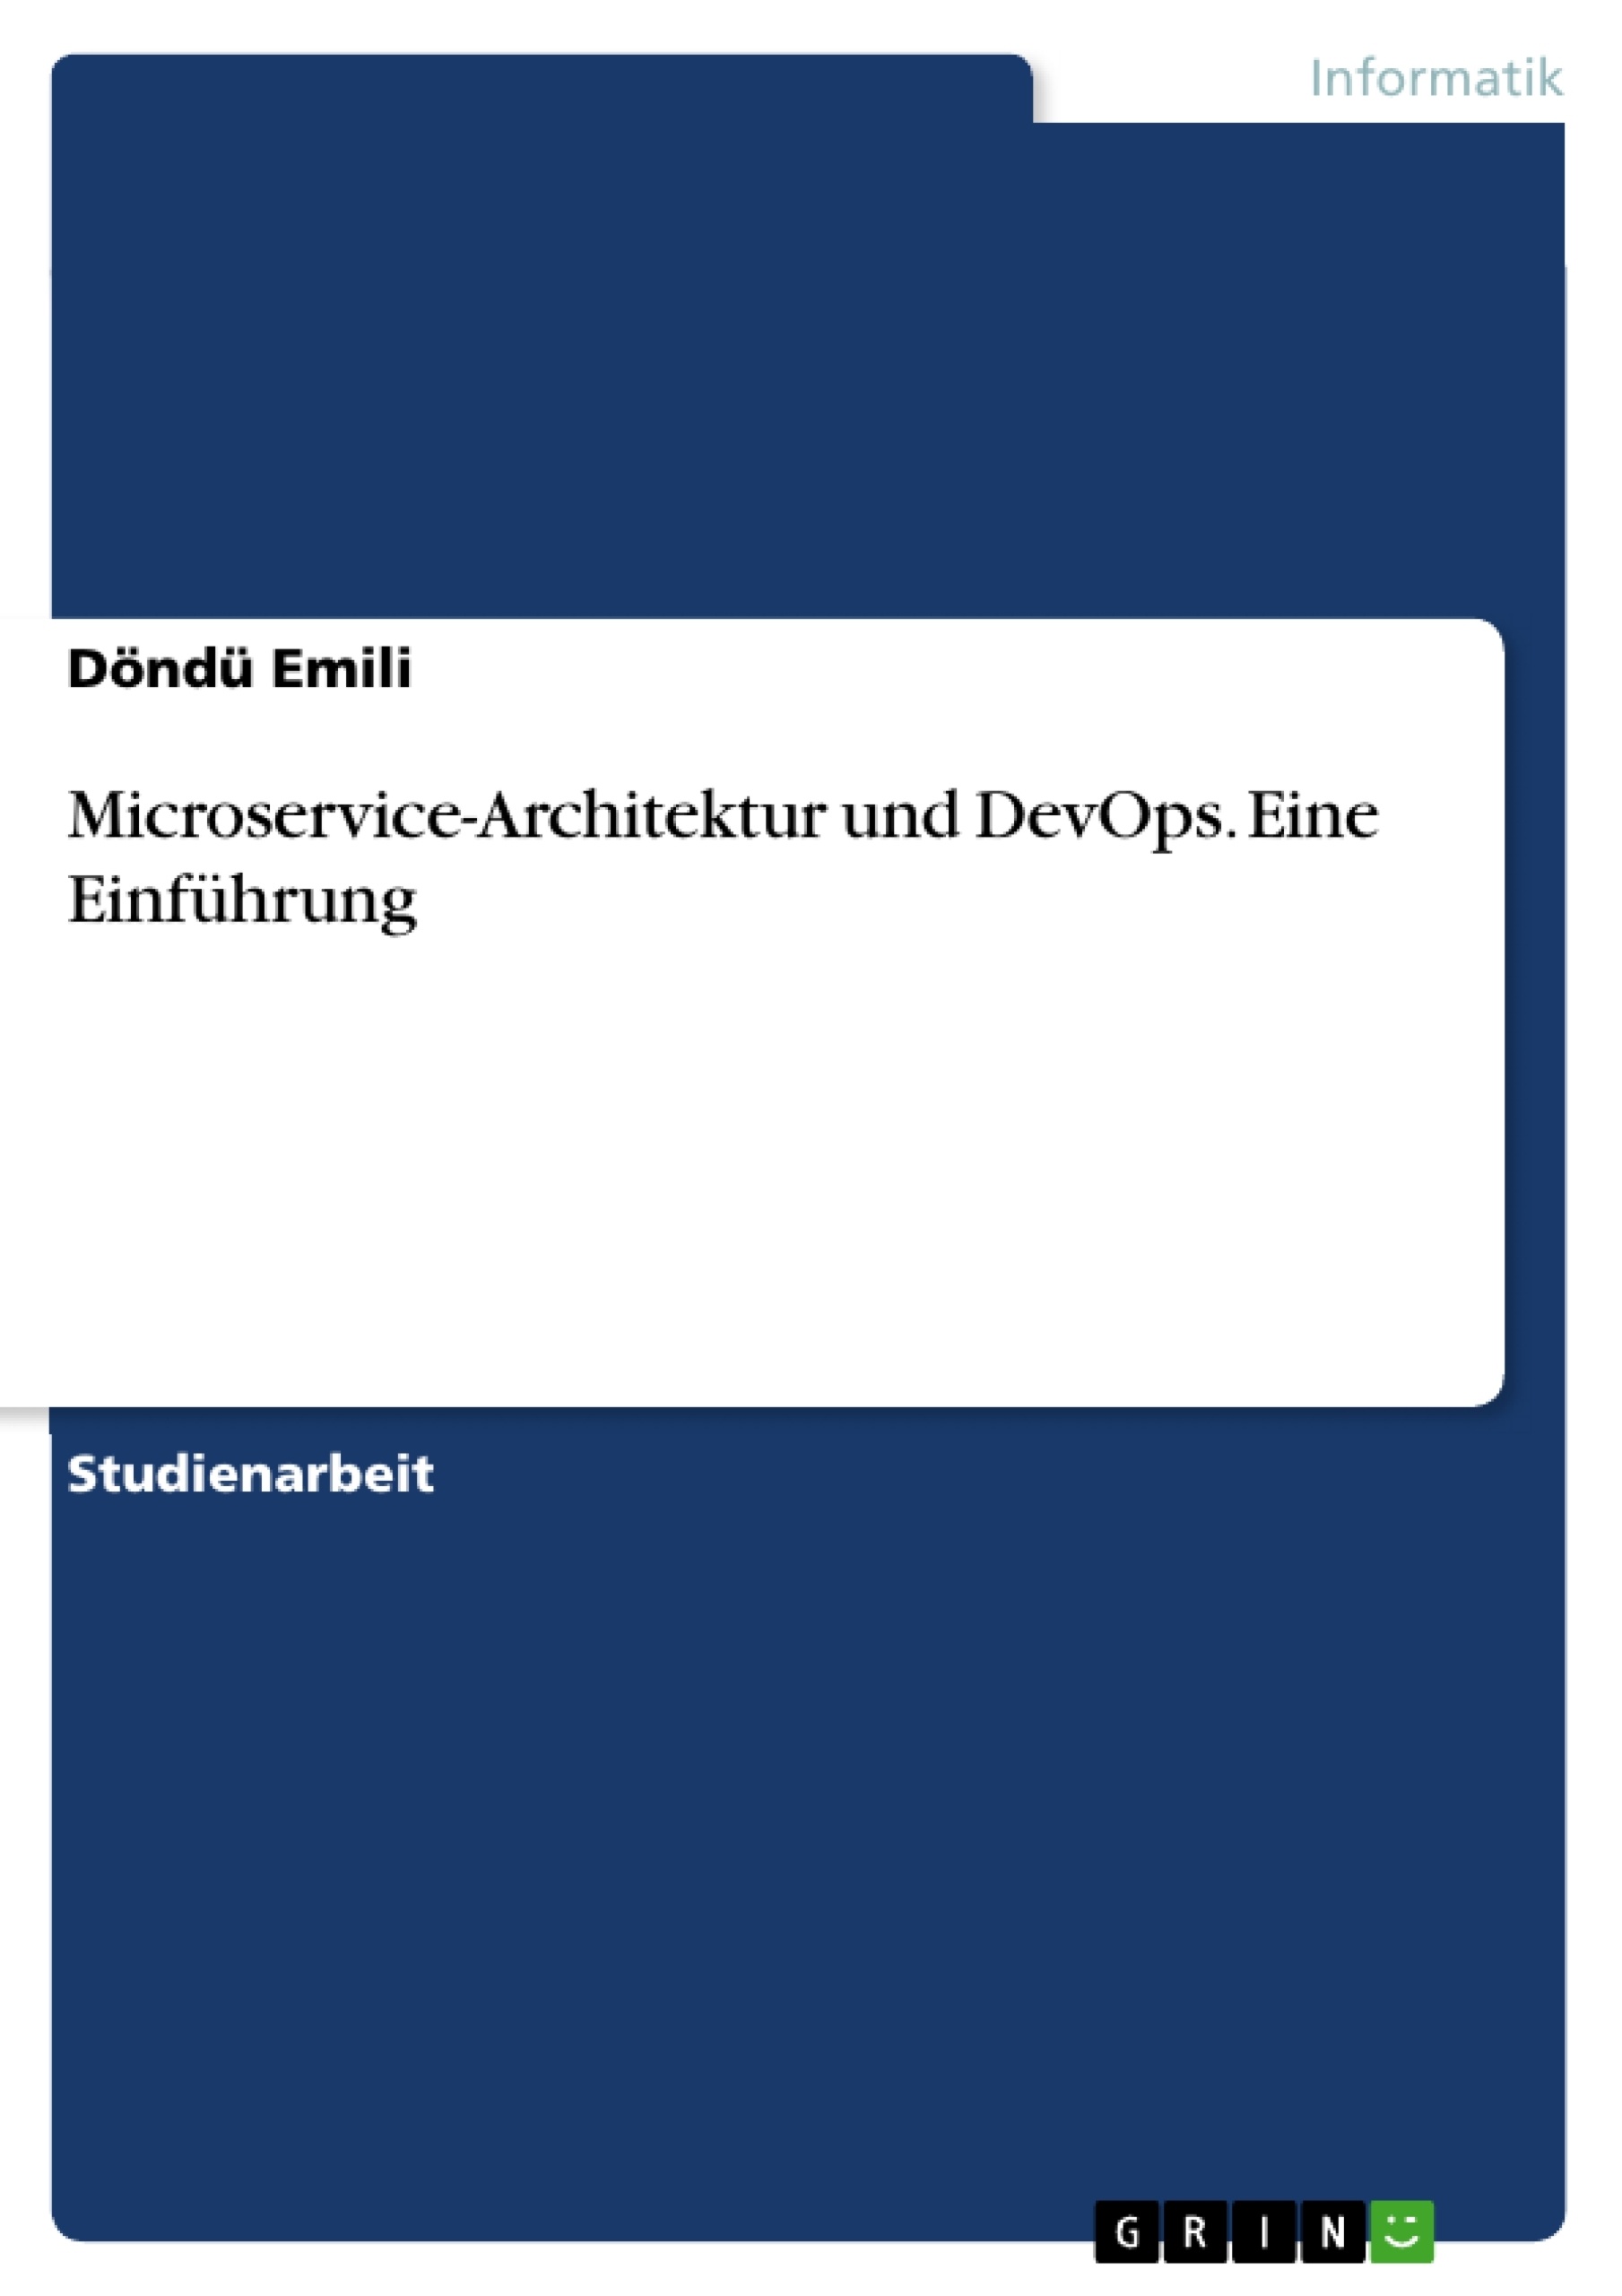 Título: Microservice-Architektur und DevOps. Eine Einführung